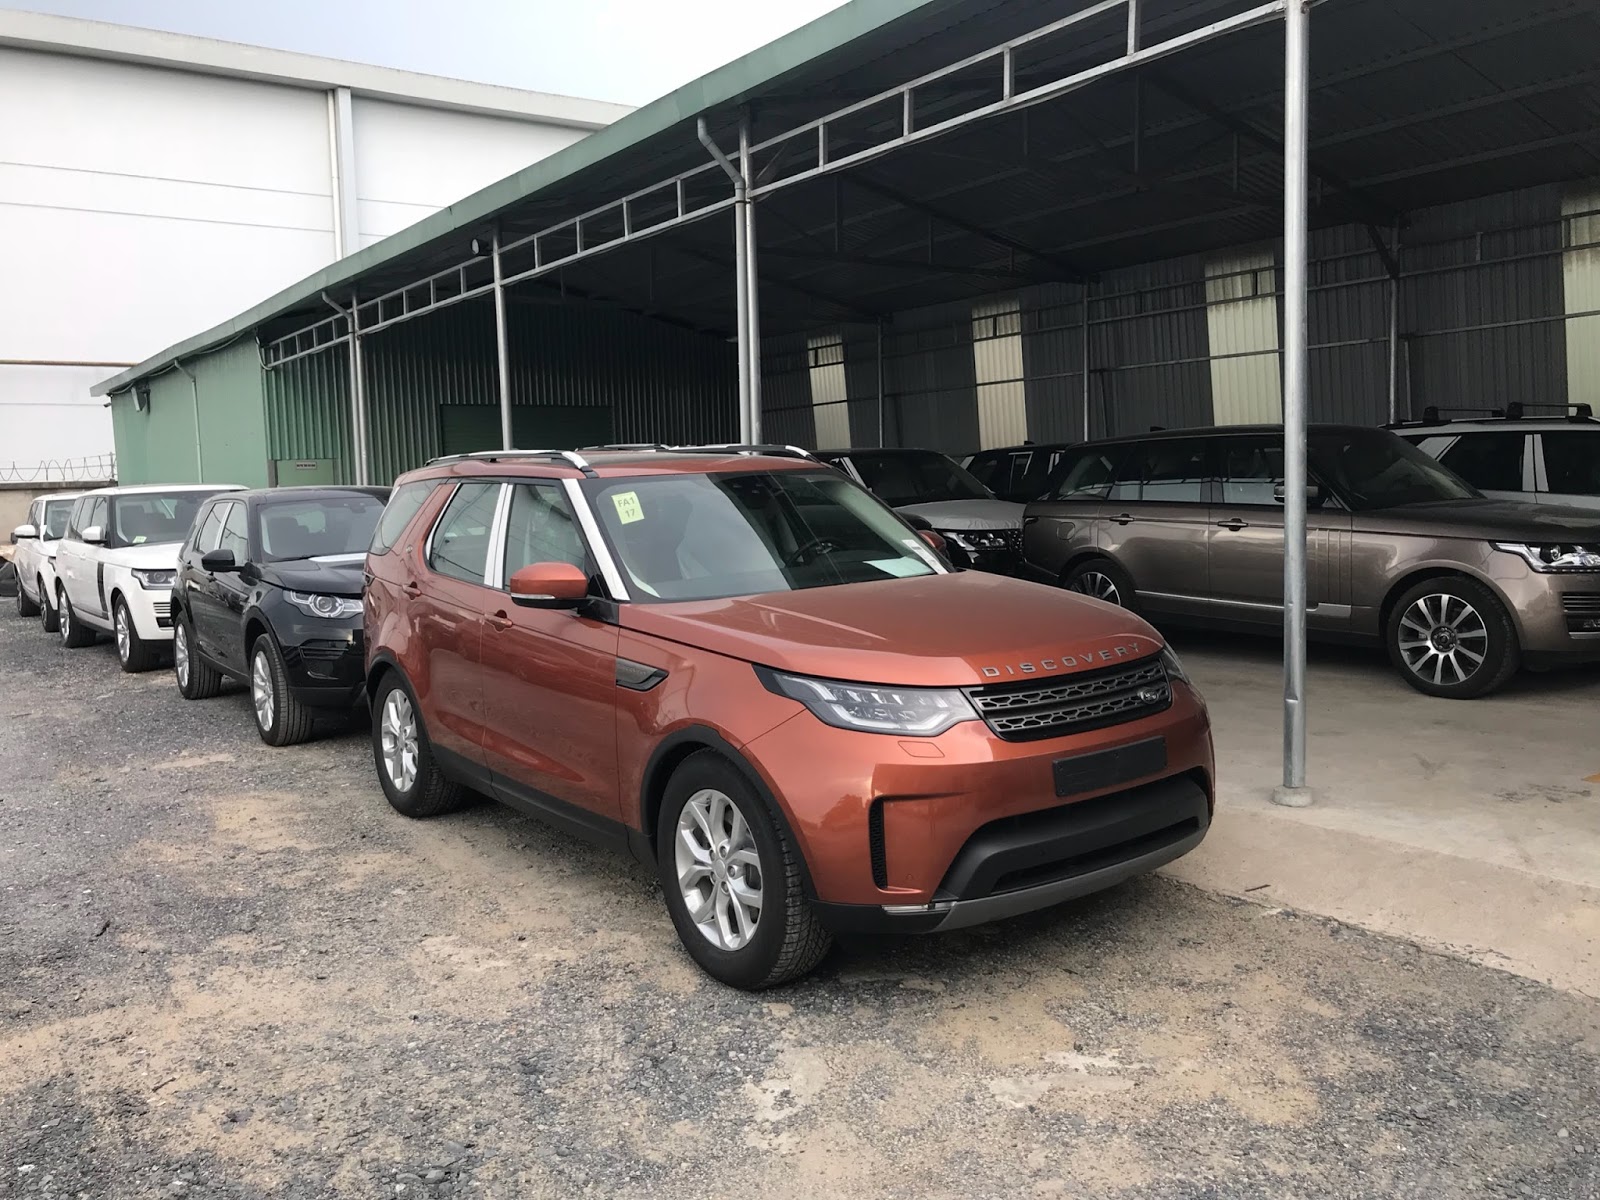 Giá Xe Land Rover 7 Chỗ Discovery SE Bản Rẻ Nhất Màu Cam Đời Mới Nhất 2018 và 2019 tại việt nam bao nhiêu tiền, xe máy xăng và máy dầu xe nào tôt hơn